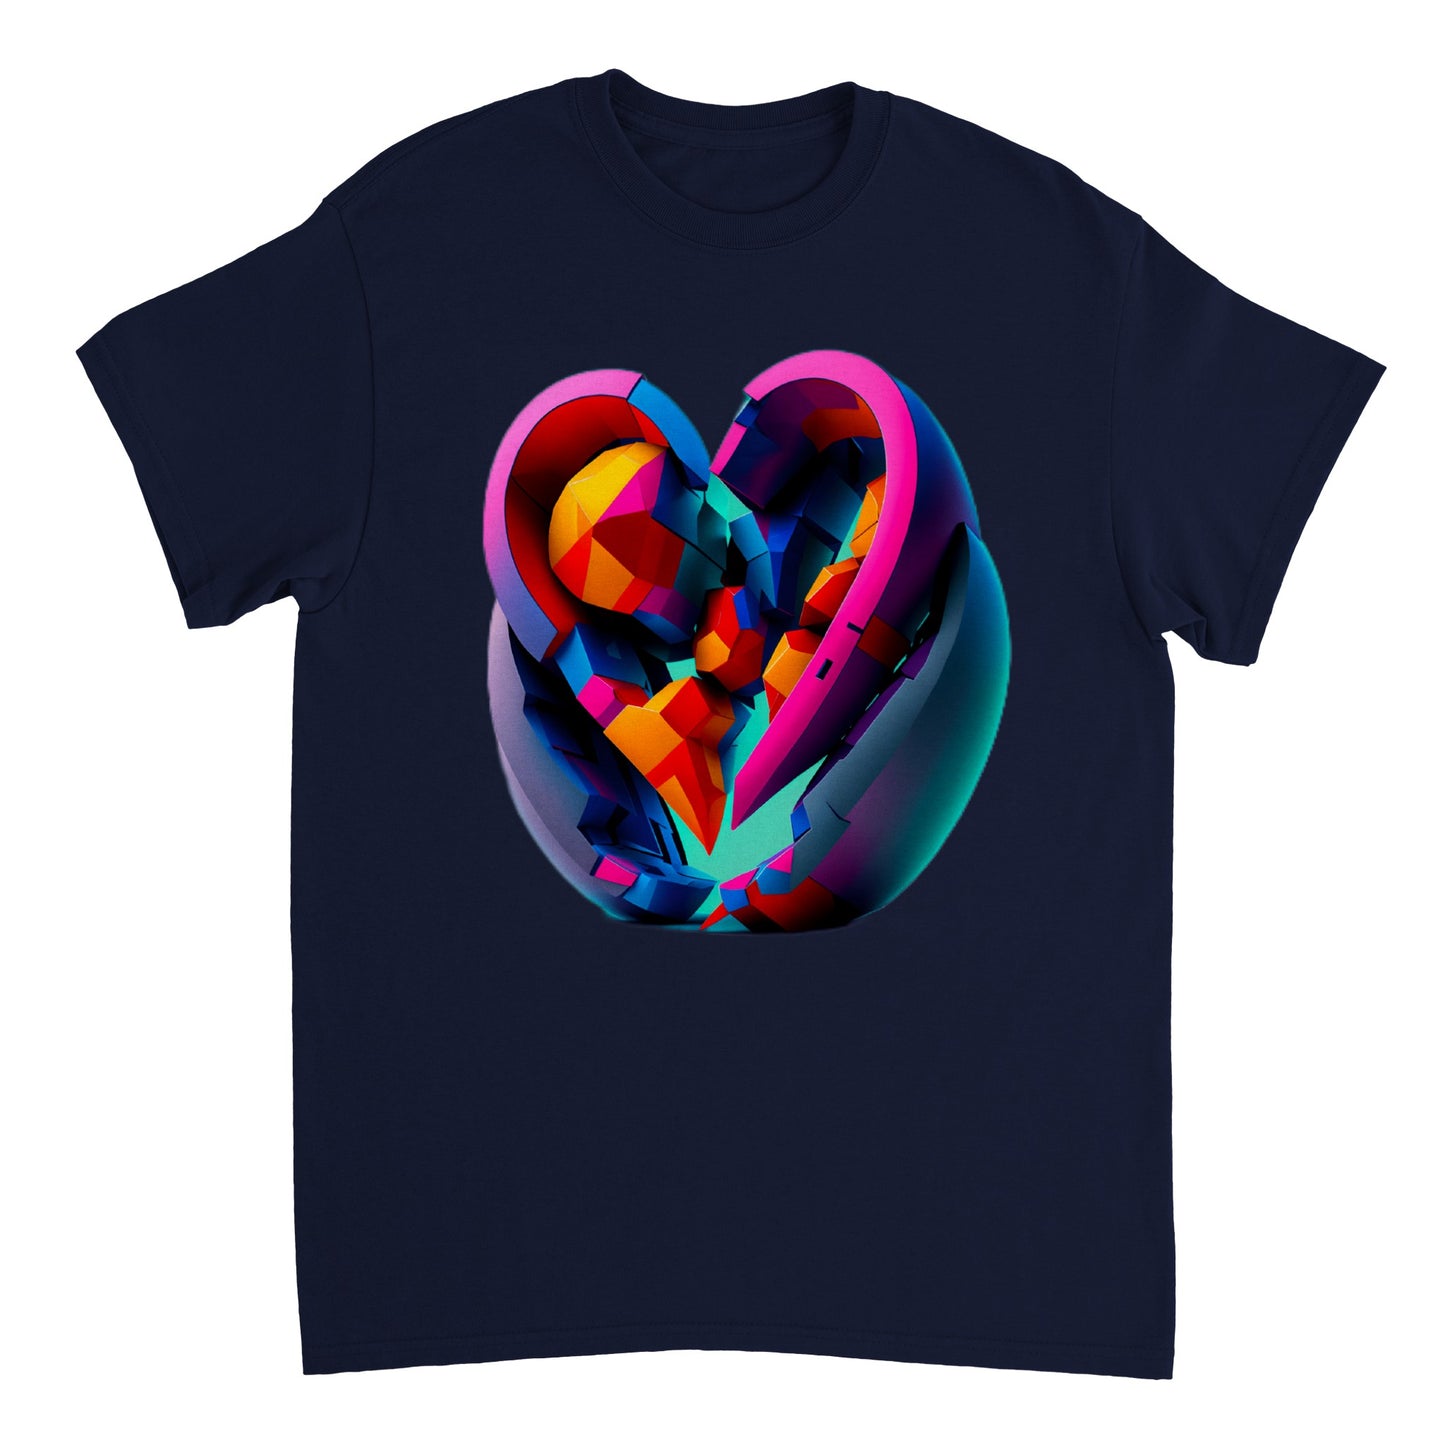 Love Heart - Heavyweight Unisex Crewneck T-shirt 30